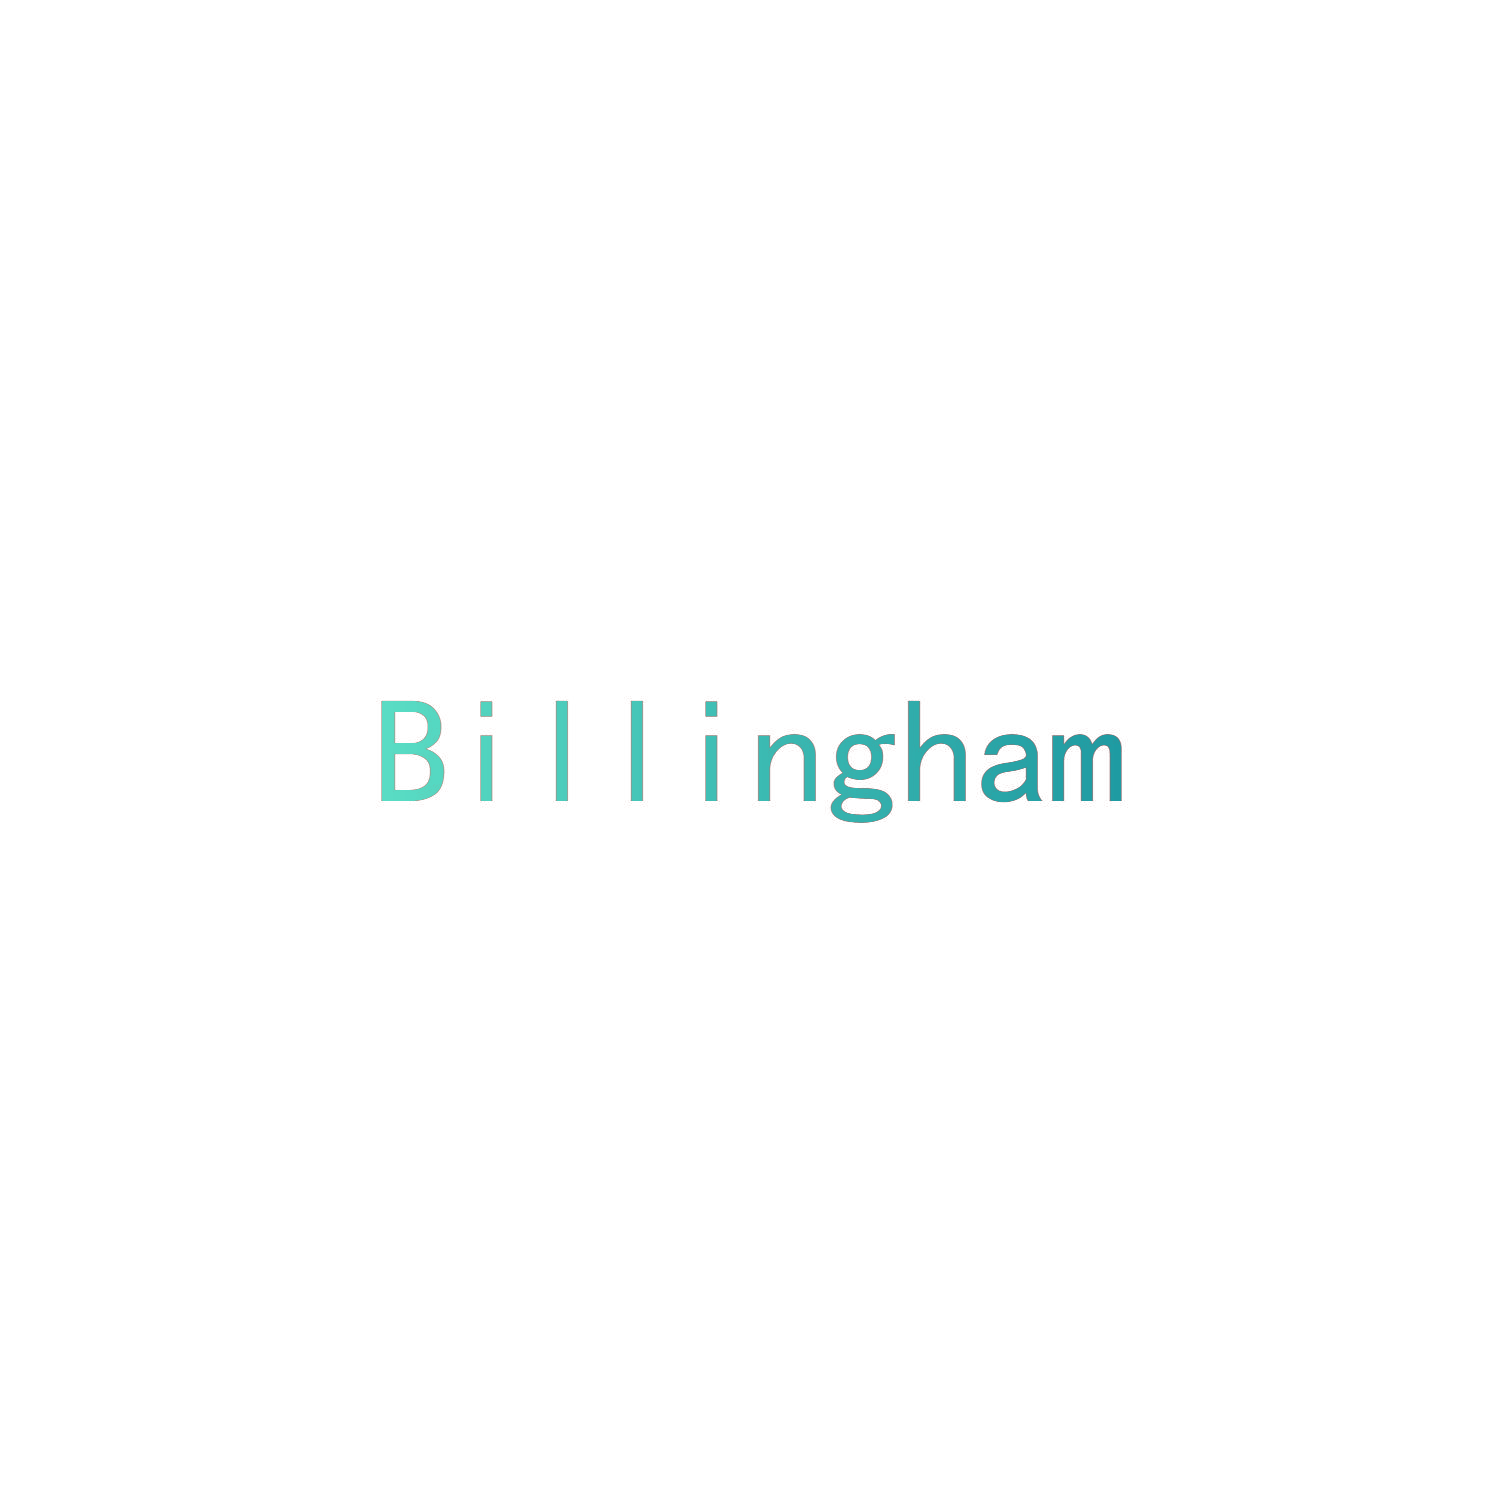 BILLINGHAM